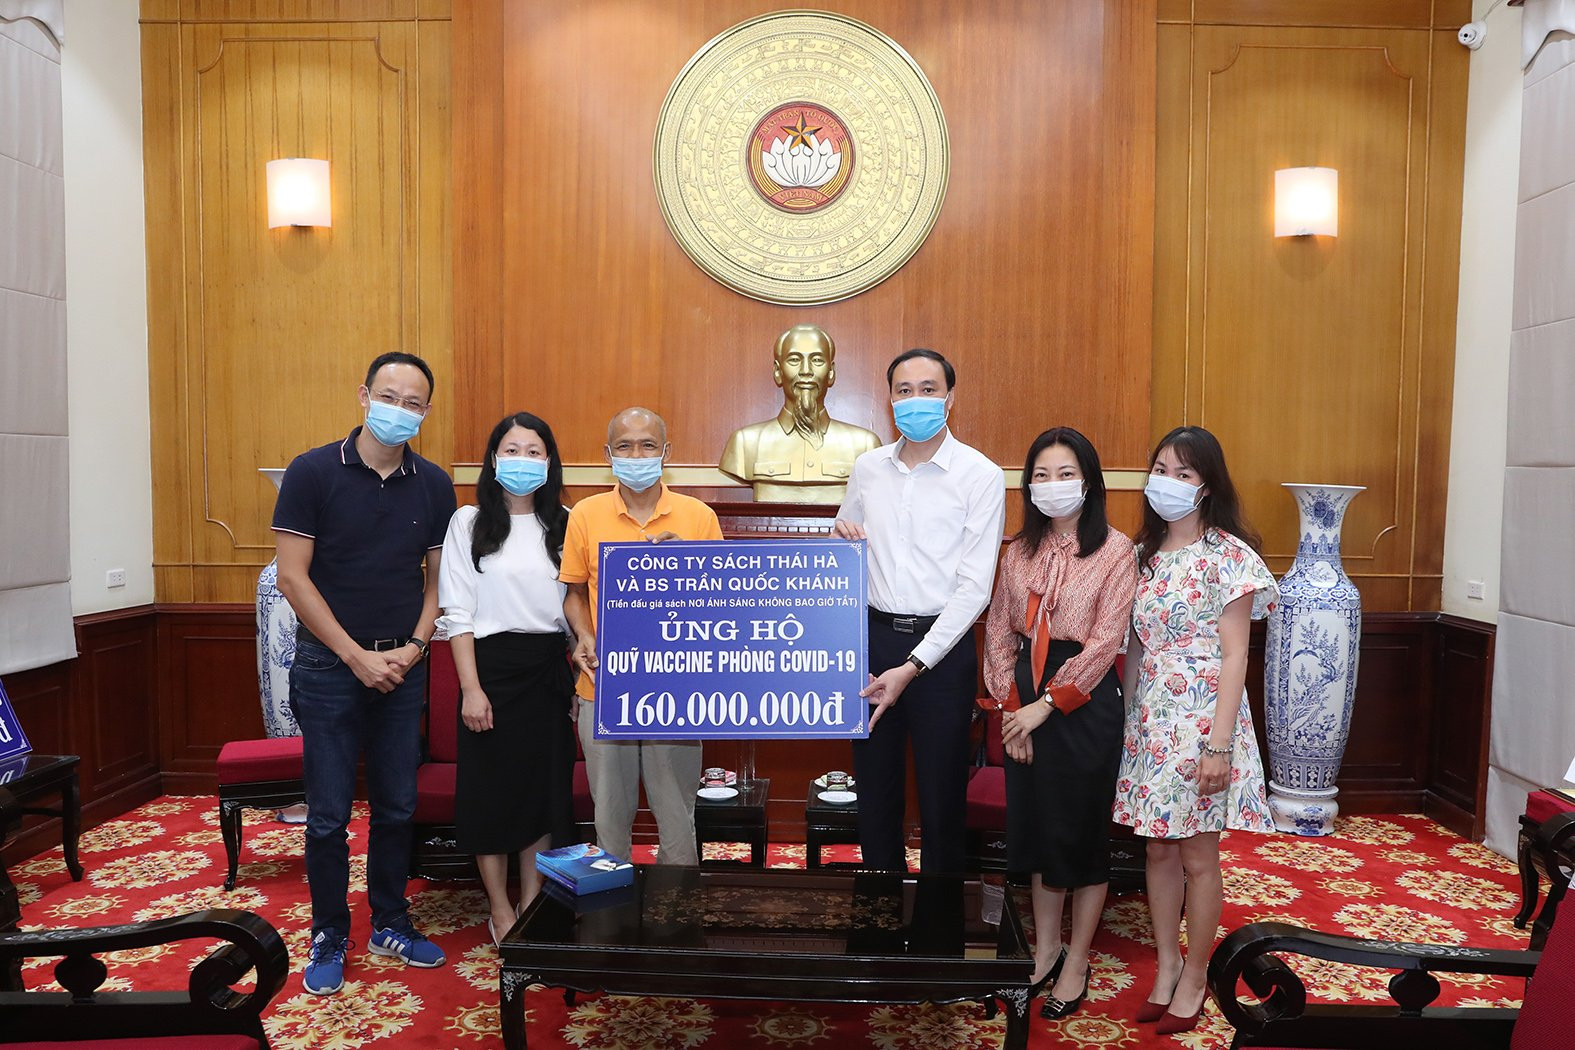 Phó Chủ tịch Phùng Khánh Tài tiếp nhận ủng hộ từ Công ty Sách Thái Hà và Bác sĩ Trần Quốc Khánh.